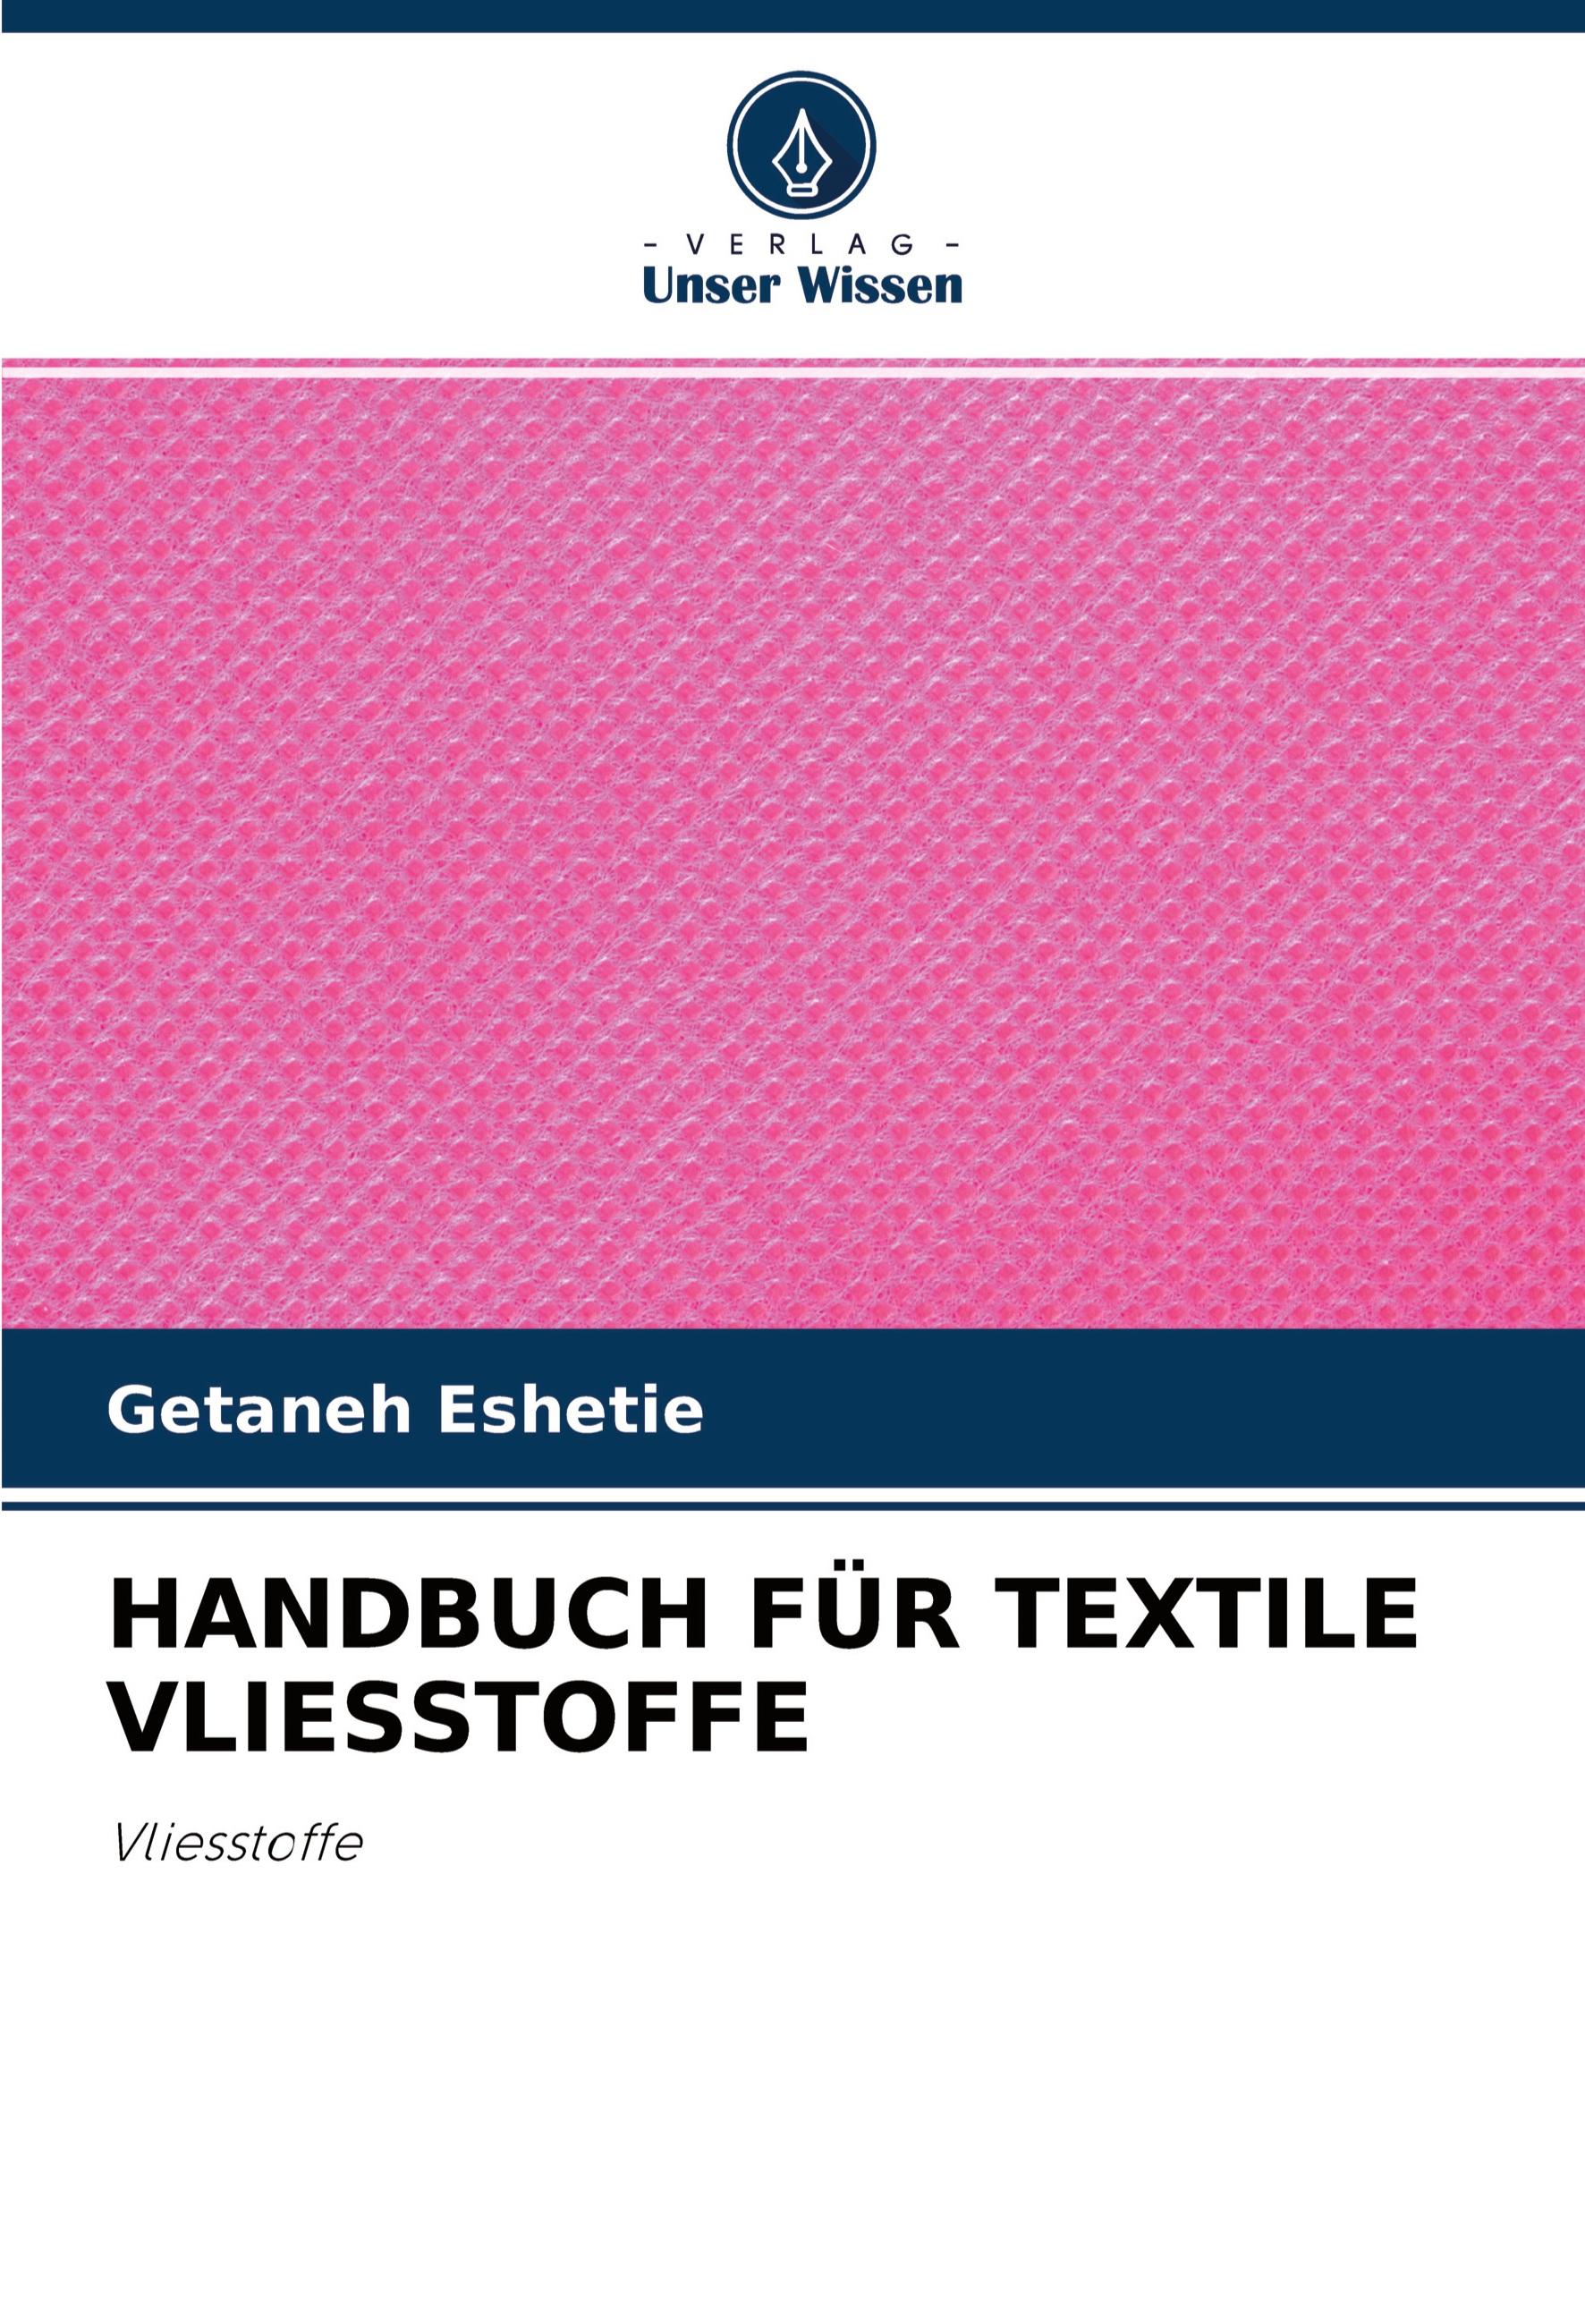 HANDBUCH FÜR TEXTILE VLIESSTOFFE / Vliesstoffe / Getaneh Eshetie / Taschenbuch / Paperback / 96 S. / Deutsch / 2020 / Verlag Unser Wissen / EAN 9786203063905 - Eshetie, Getaneh